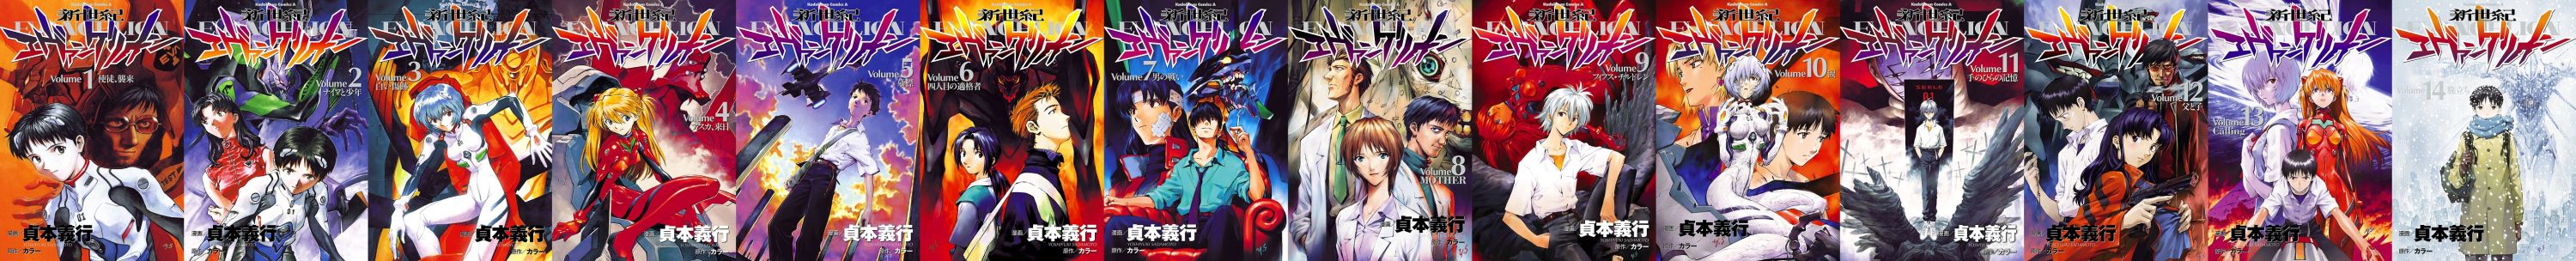 Manga Cover Banner.jpg